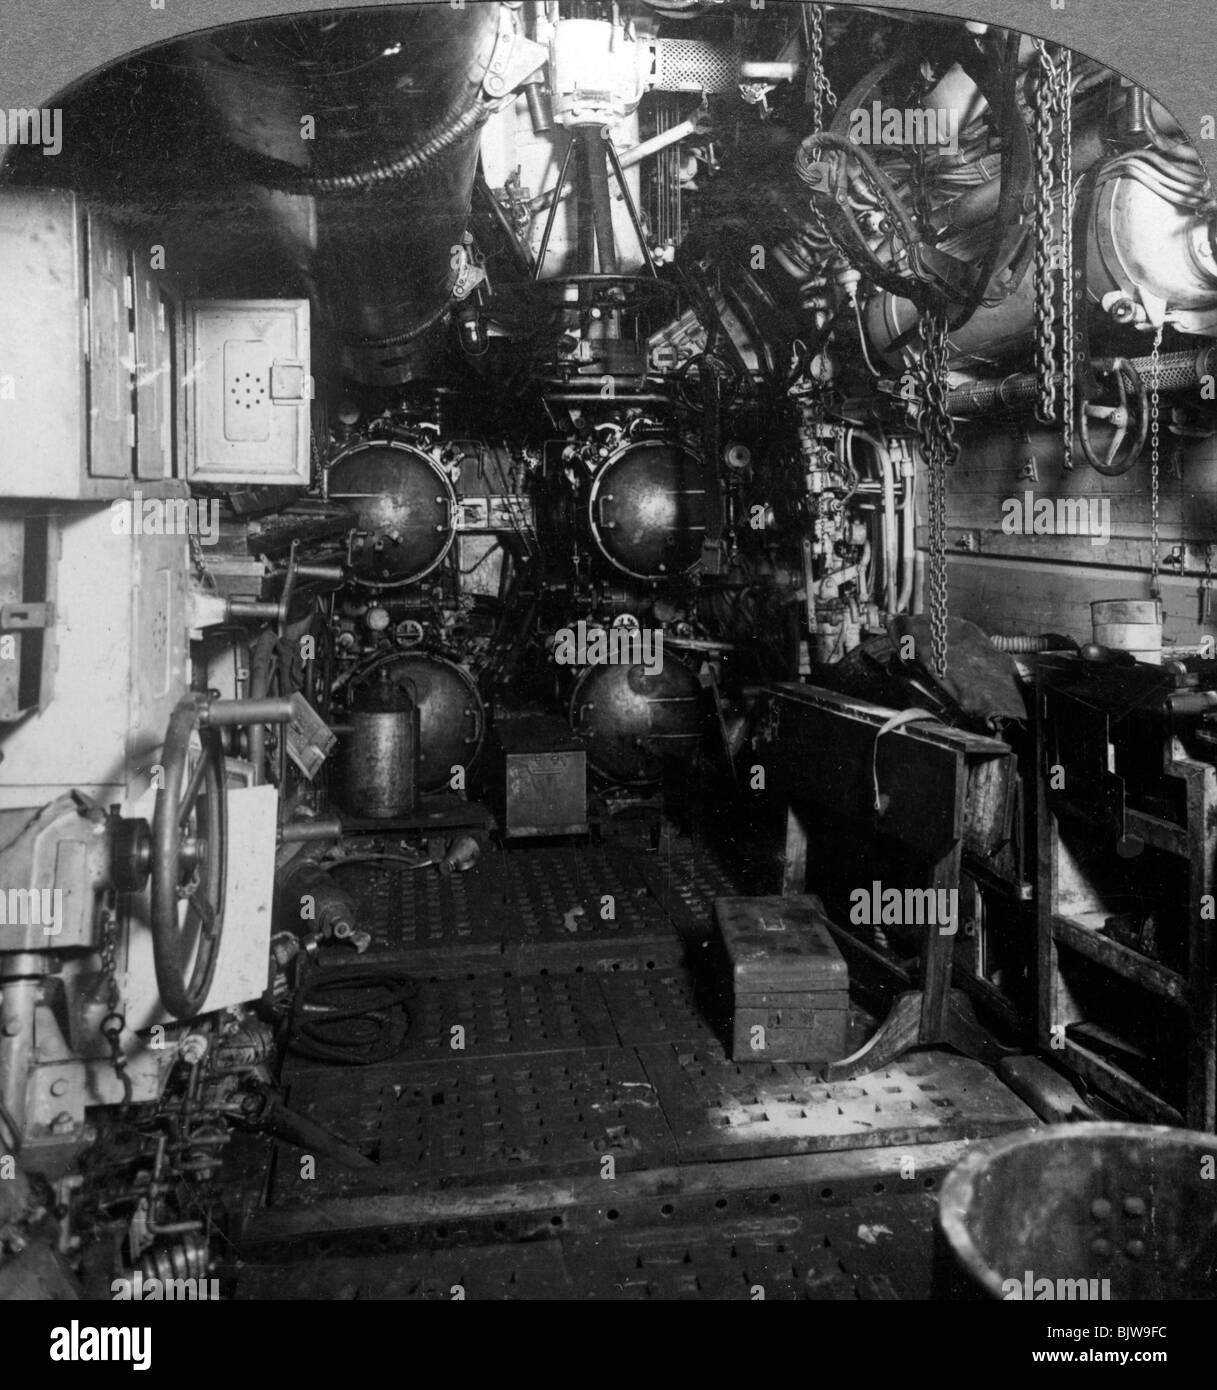 Quatre tubes lance-torpilles dans le compartiment avant d'un sous-marin allemand, la Première Guerre mondiale, 1918.Artiste : Éditeurs Voyages réaliste Banque D'Images